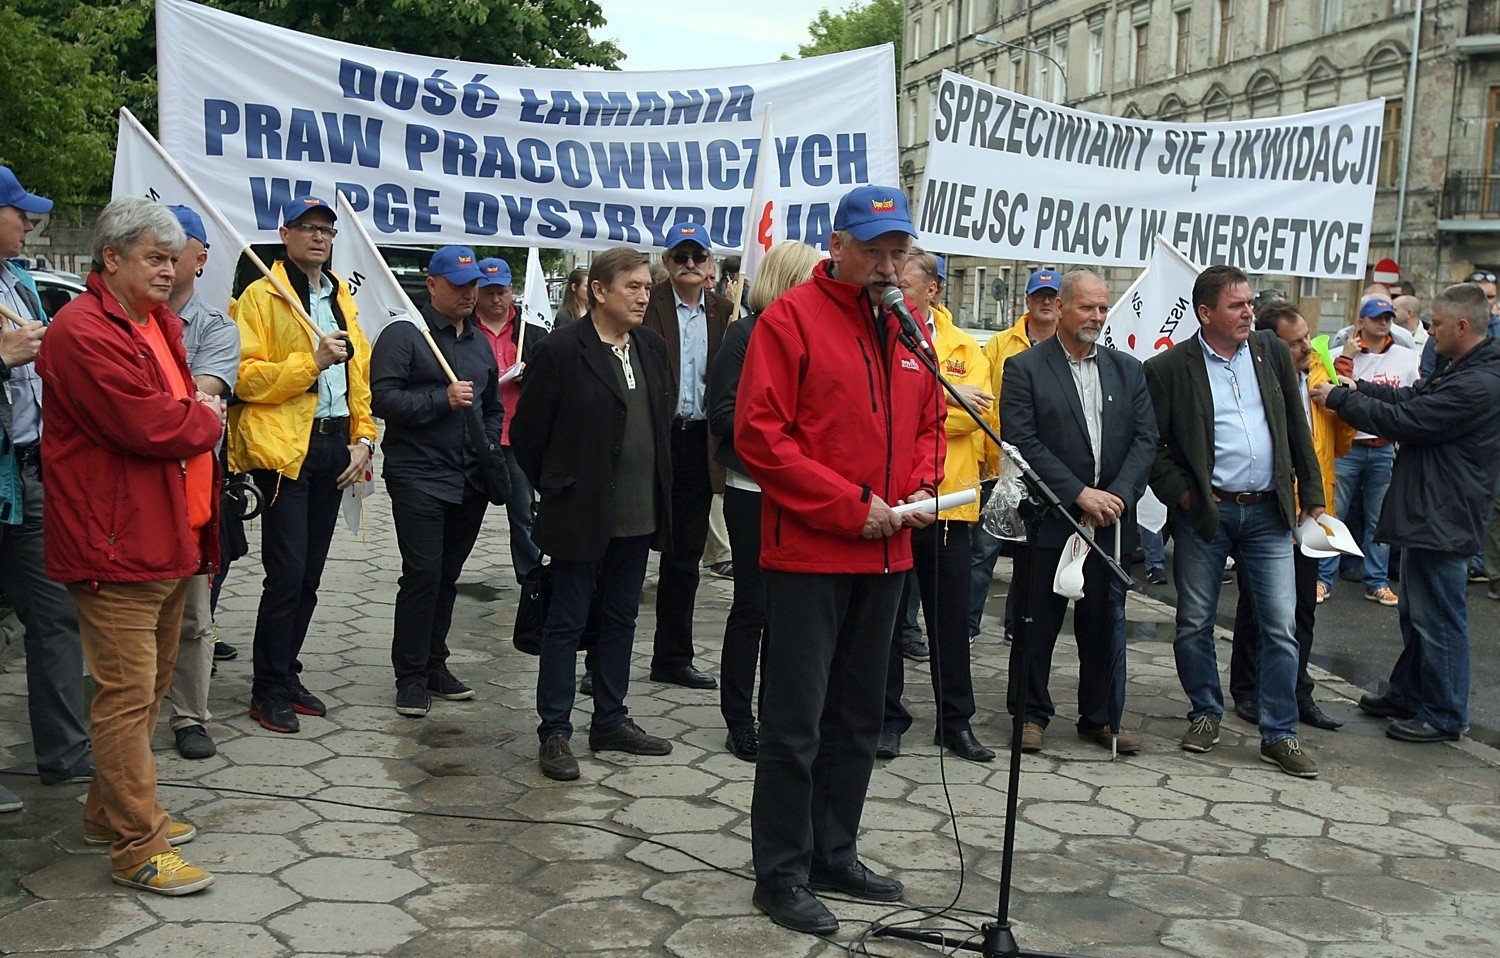 Pracownicy PGE Dystrybucja protestowali w Łodzi w obronie praw  pracowniczych [ZDJĘCIA] | Dziennik Łódzki